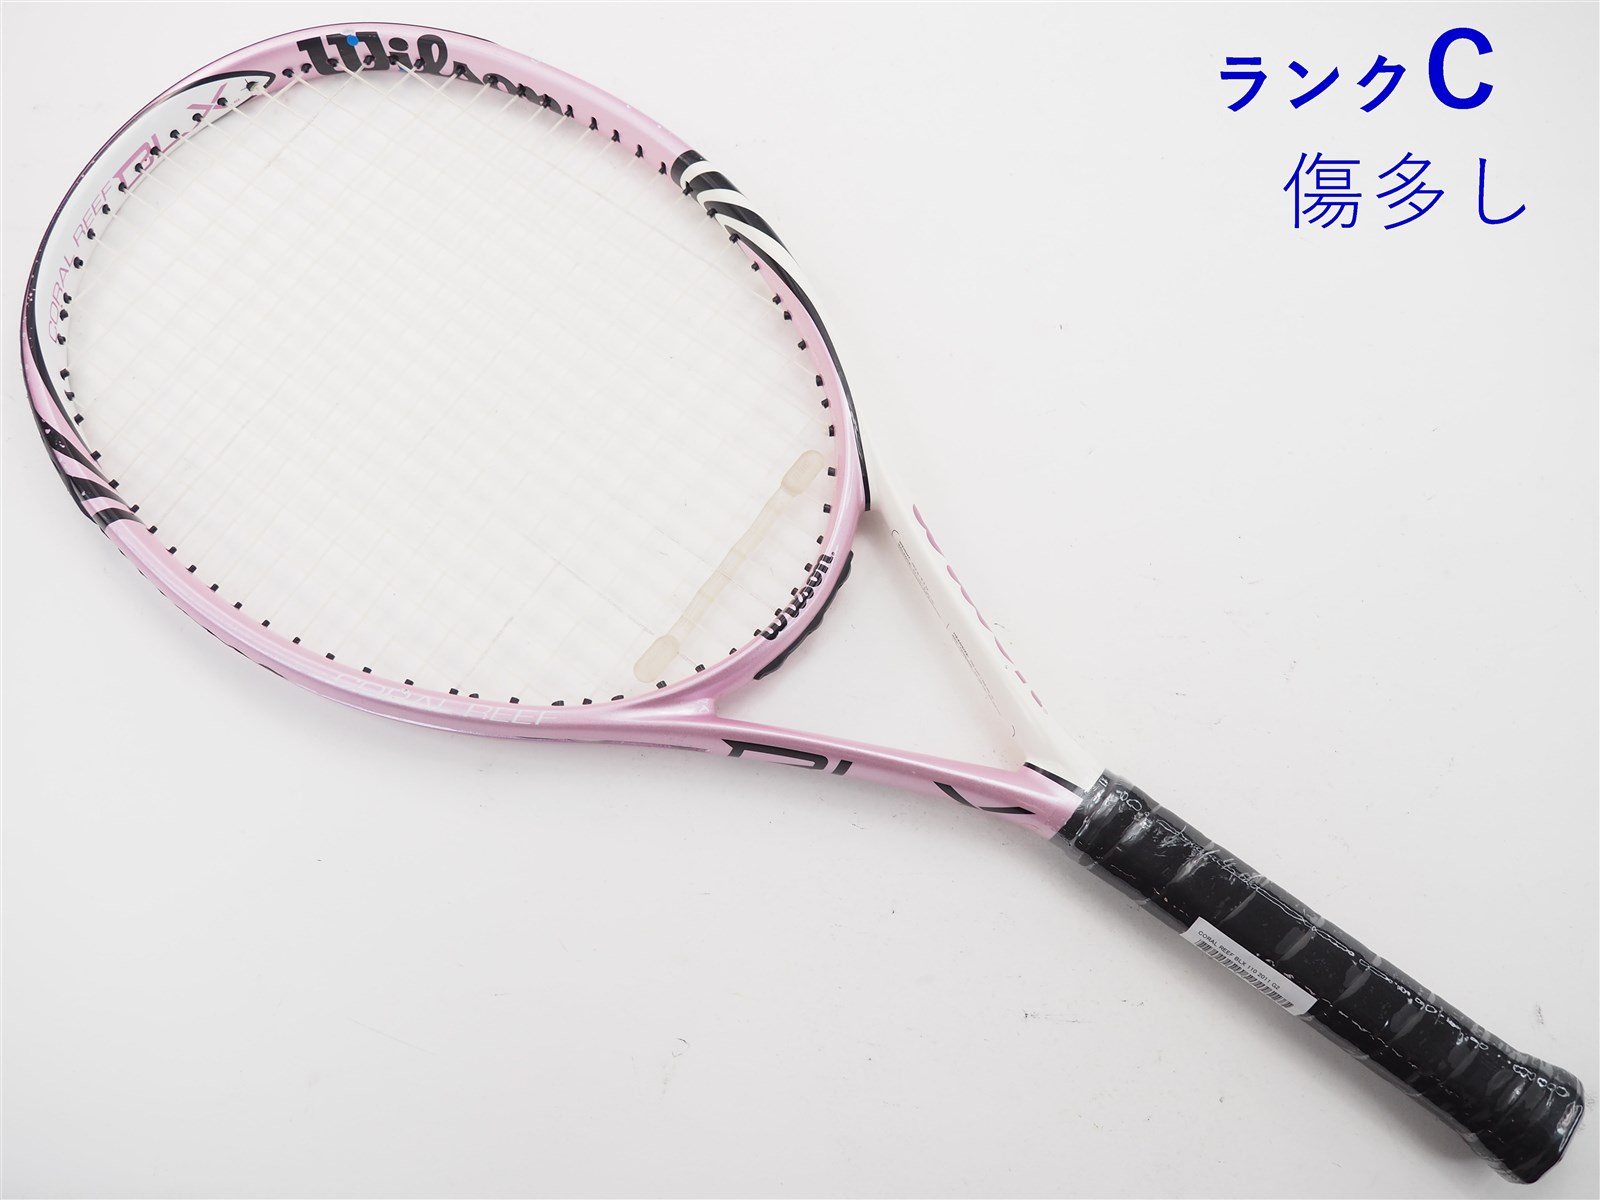 テニスラケット ウィルソン テンペスト フォー BLX 110 2011年モデル (G2)WILSON TEMPEST FOUR BLX 110 2011